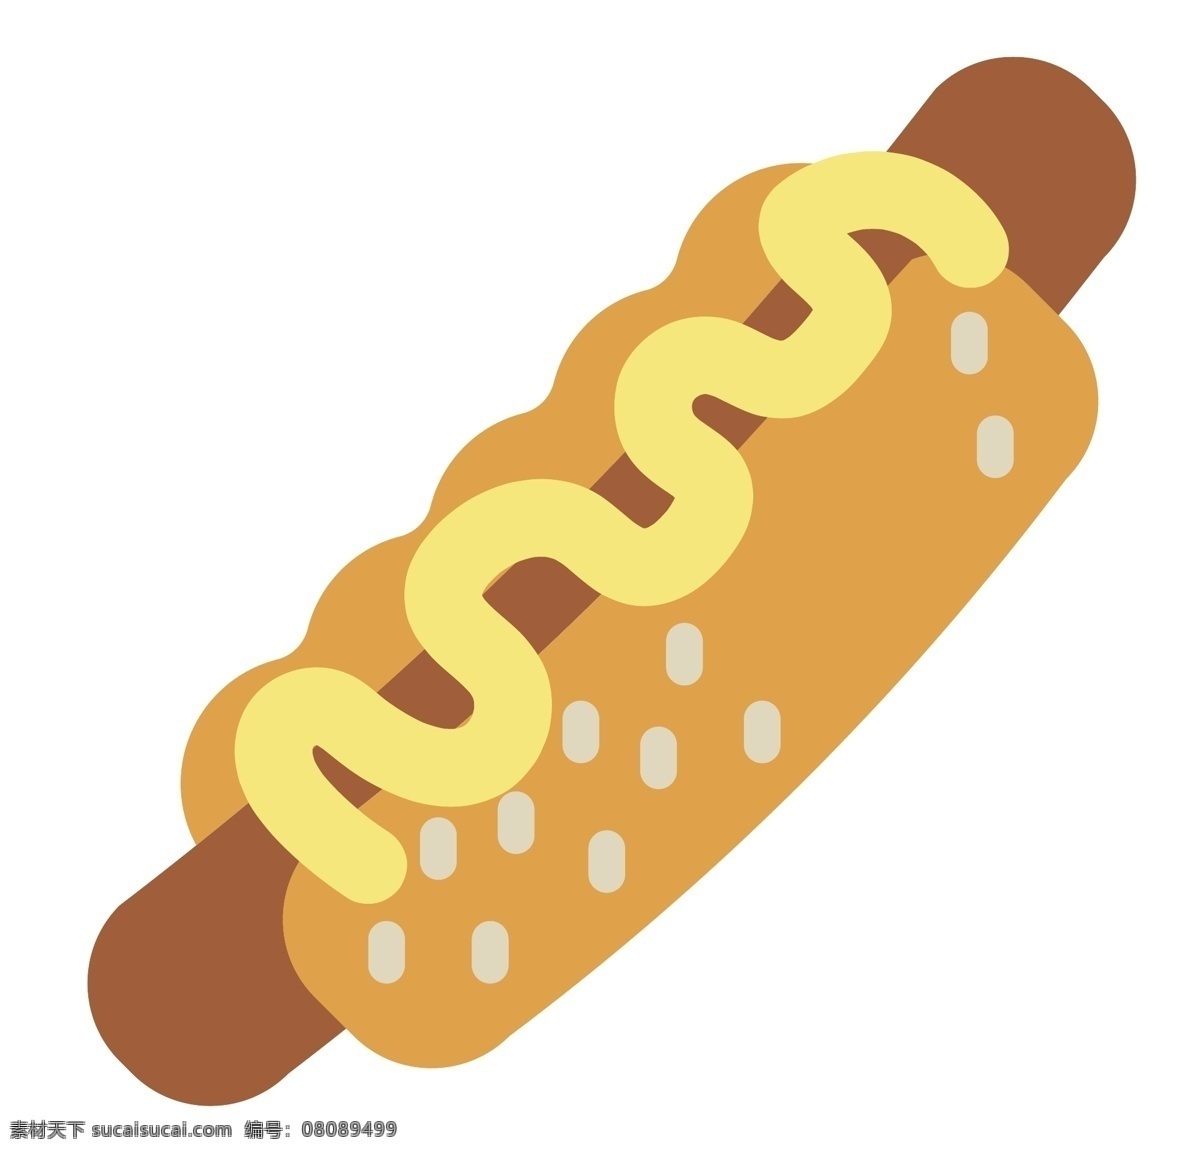 黄色 面包 热狗 插图 一根香肠 好吃的香肠 热狗香肠 黄色面包 面包夹心 黄色奶油 快餐热狗 热狗装饰